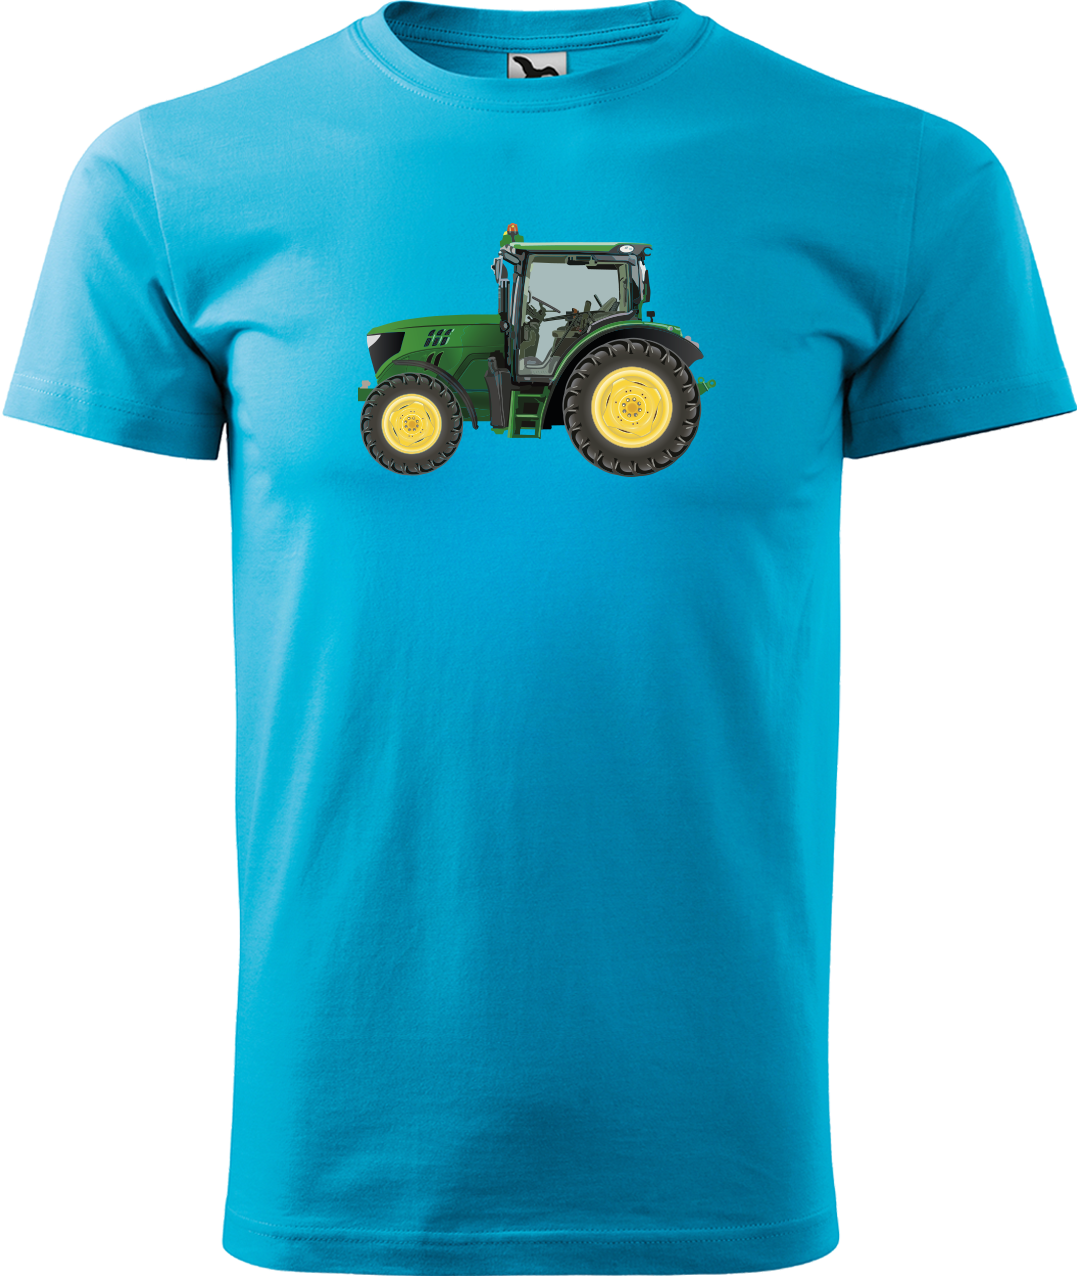 Tričko s traktorem - Zelený traktor Velikost: XL, Barva: Tyrkysová (44)